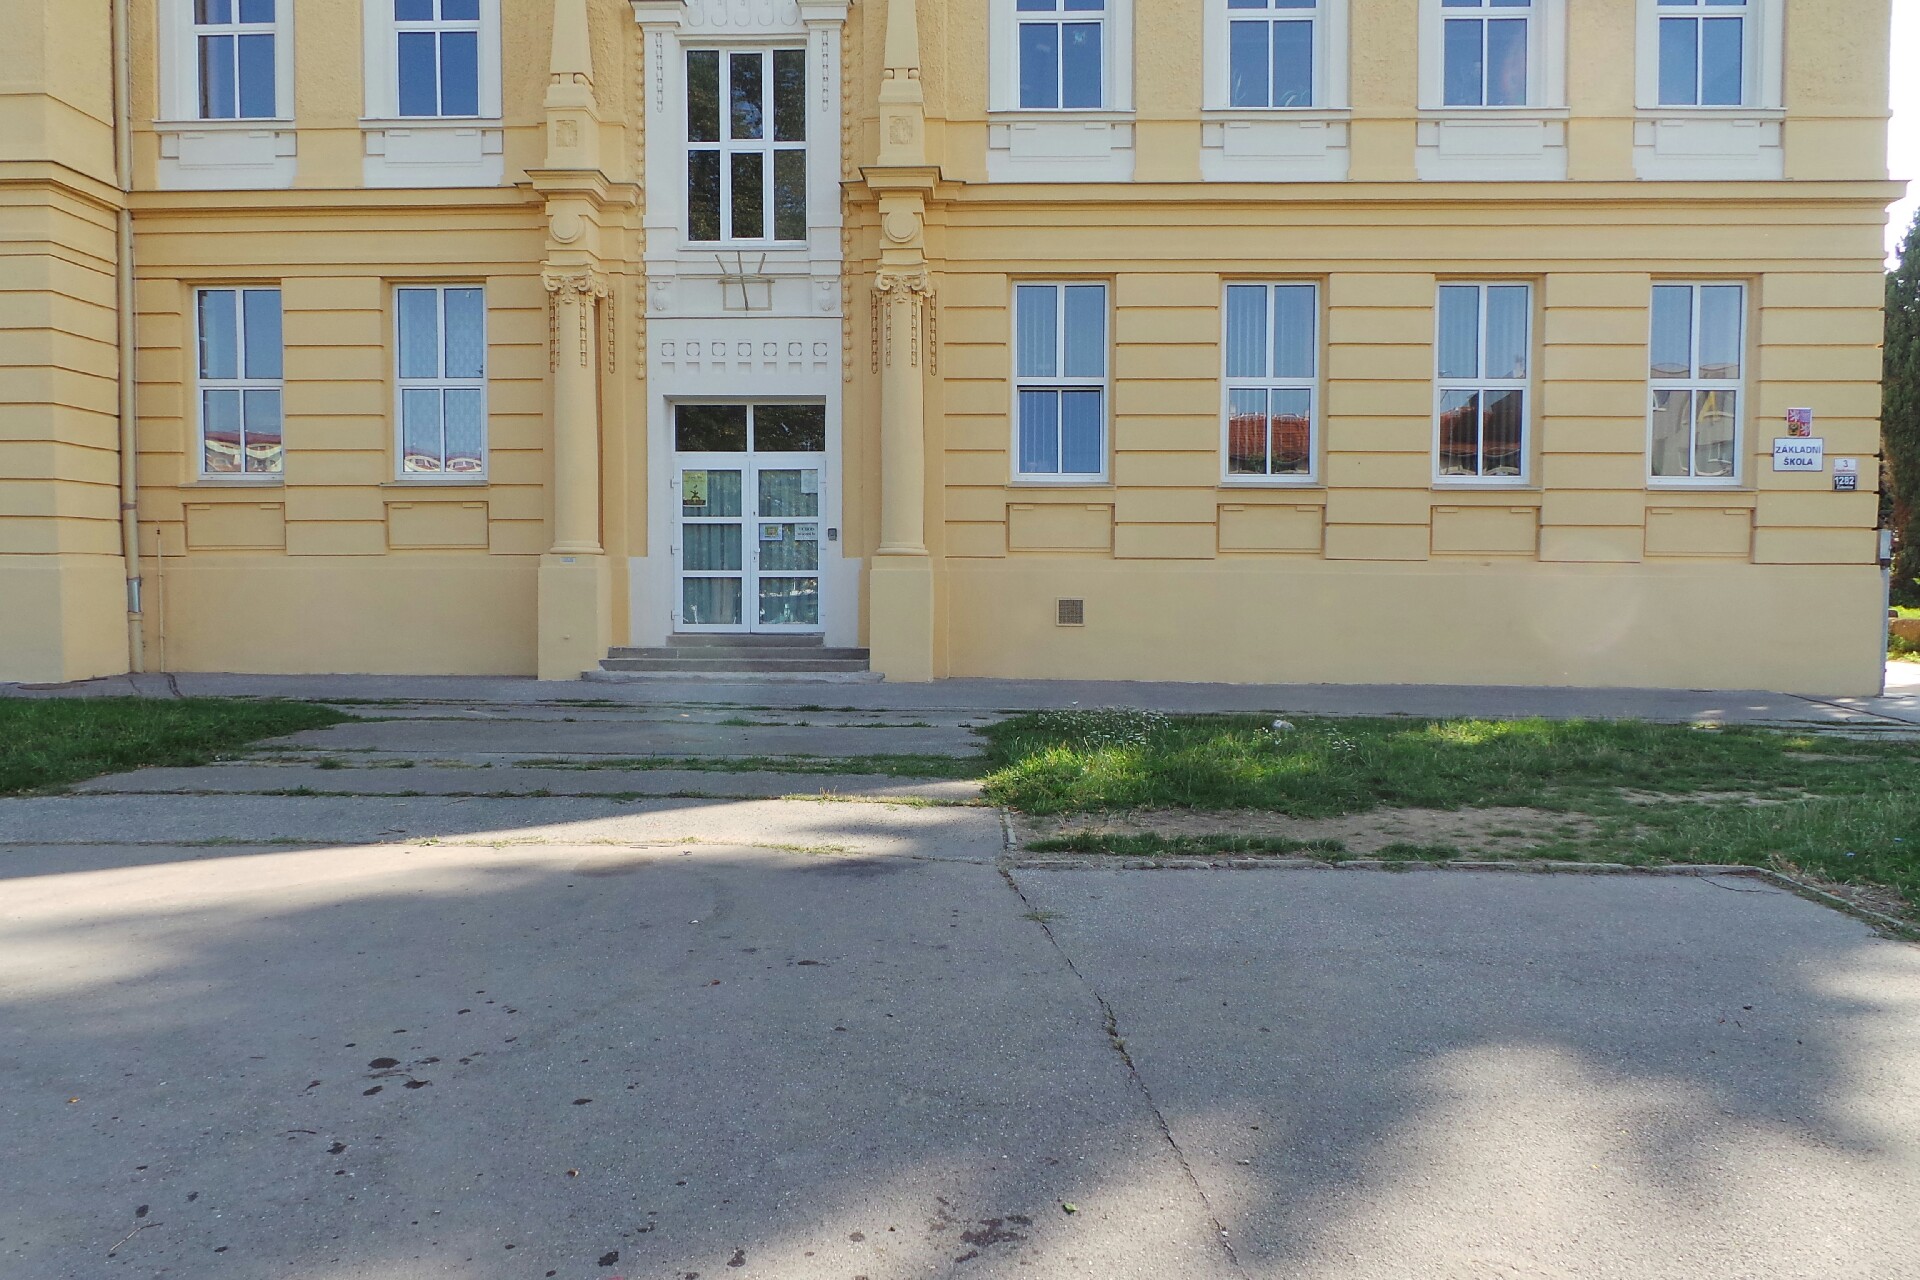 File:Brno-Zidenice - Zakladni skola Gajdosova.jpg - Wikimedia Commons